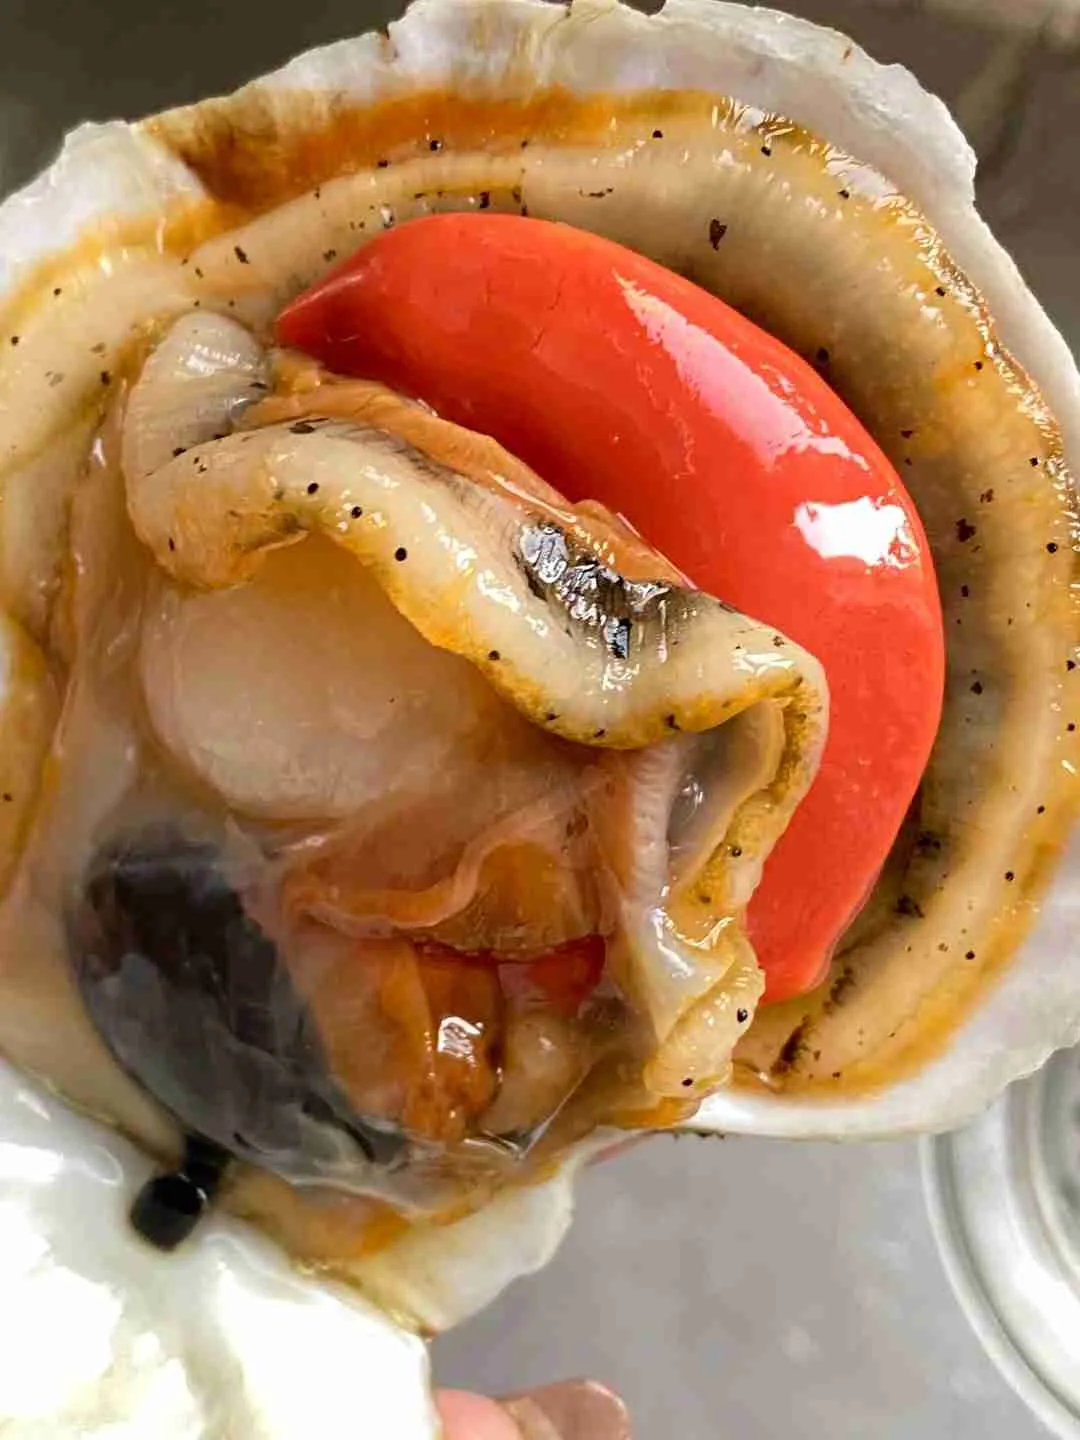 What are sea scallops